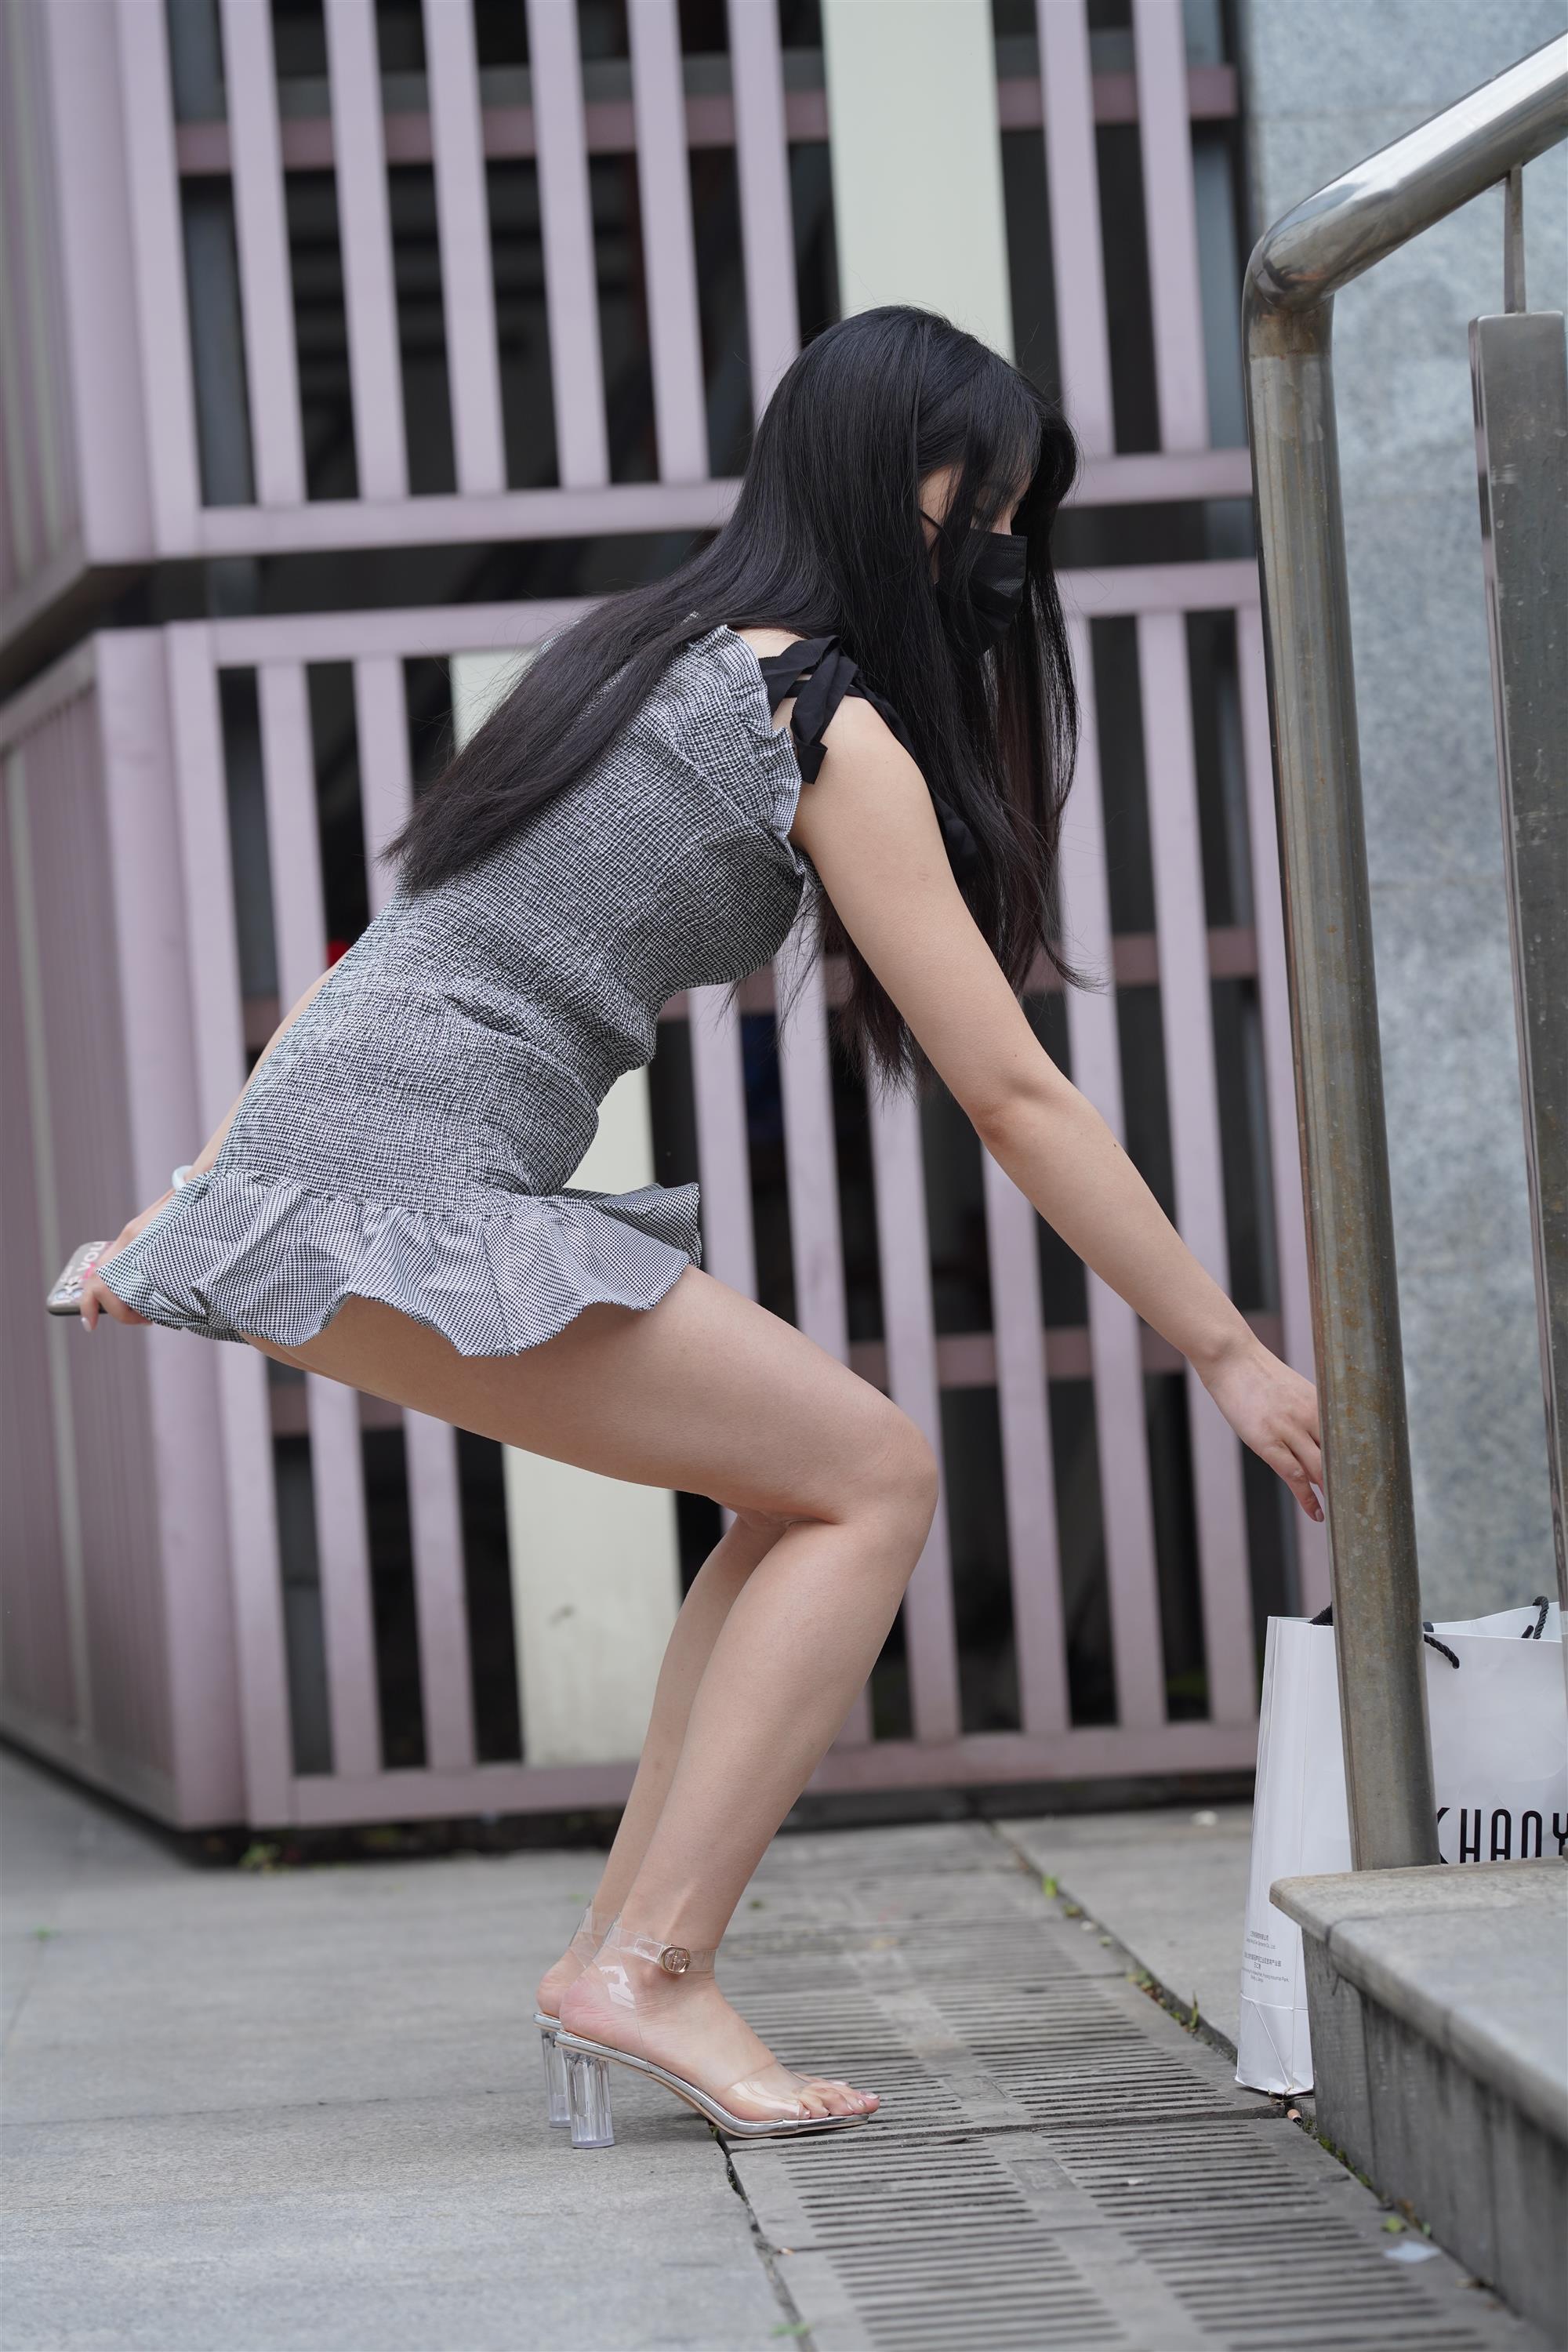 Street Girl In Short Skirt - 290.jpg